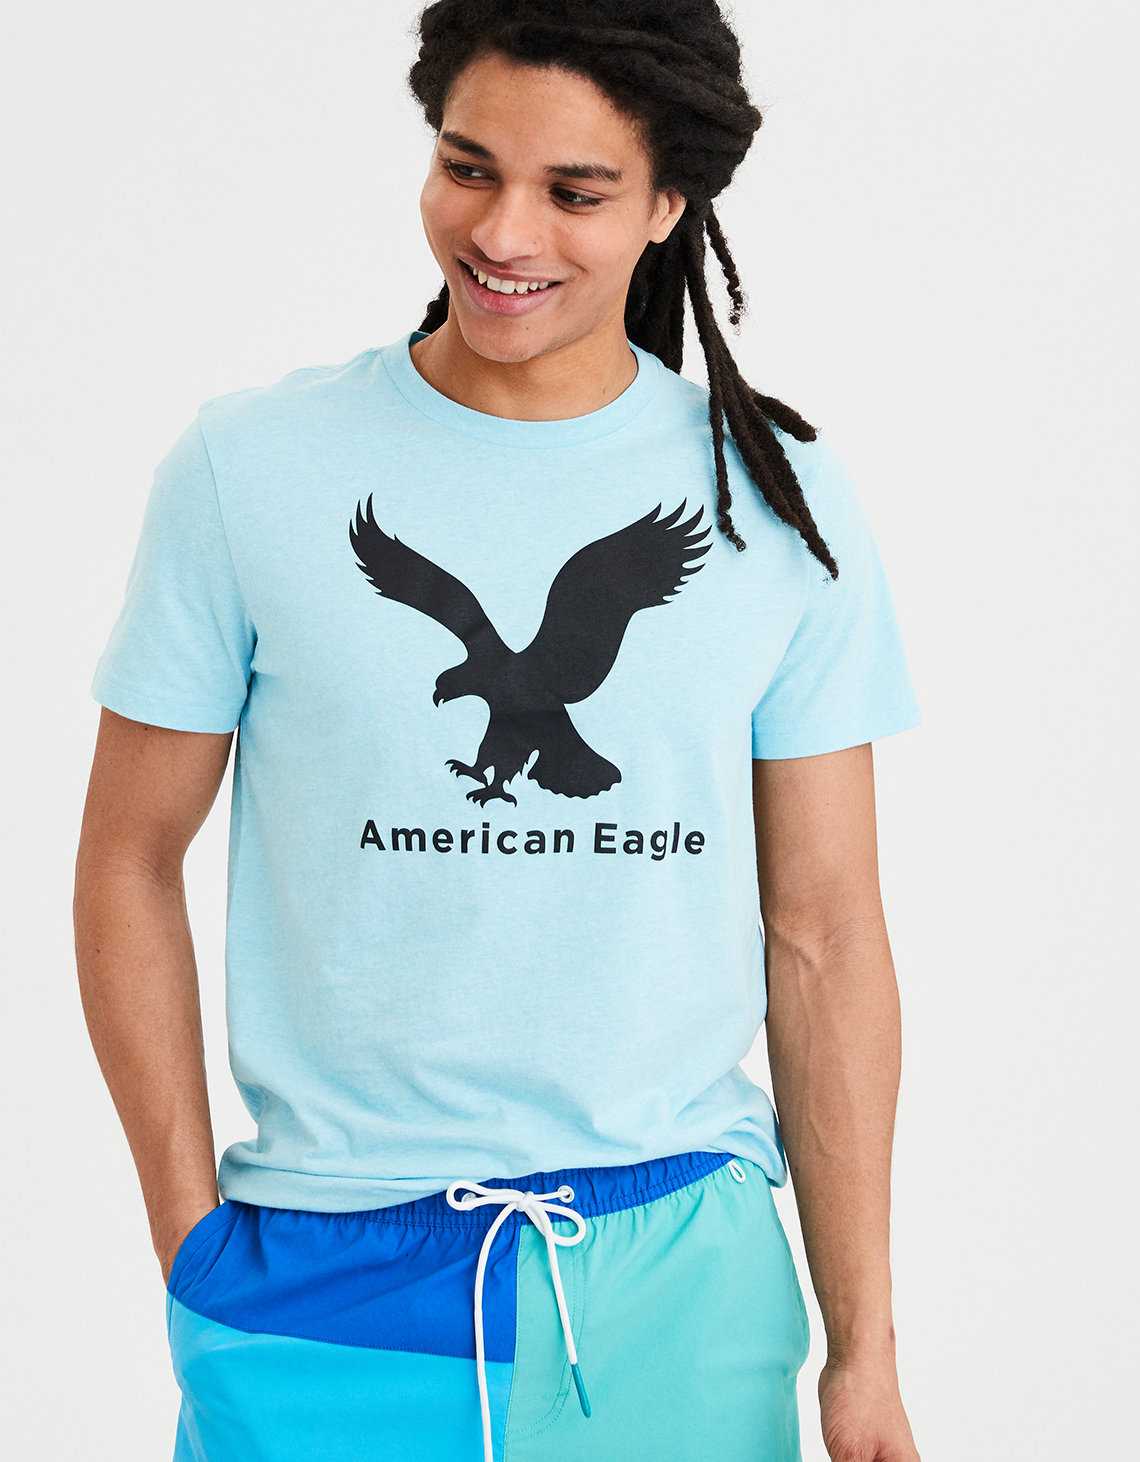 История создания и развития большой текстильной компании American Eagle Outfitters